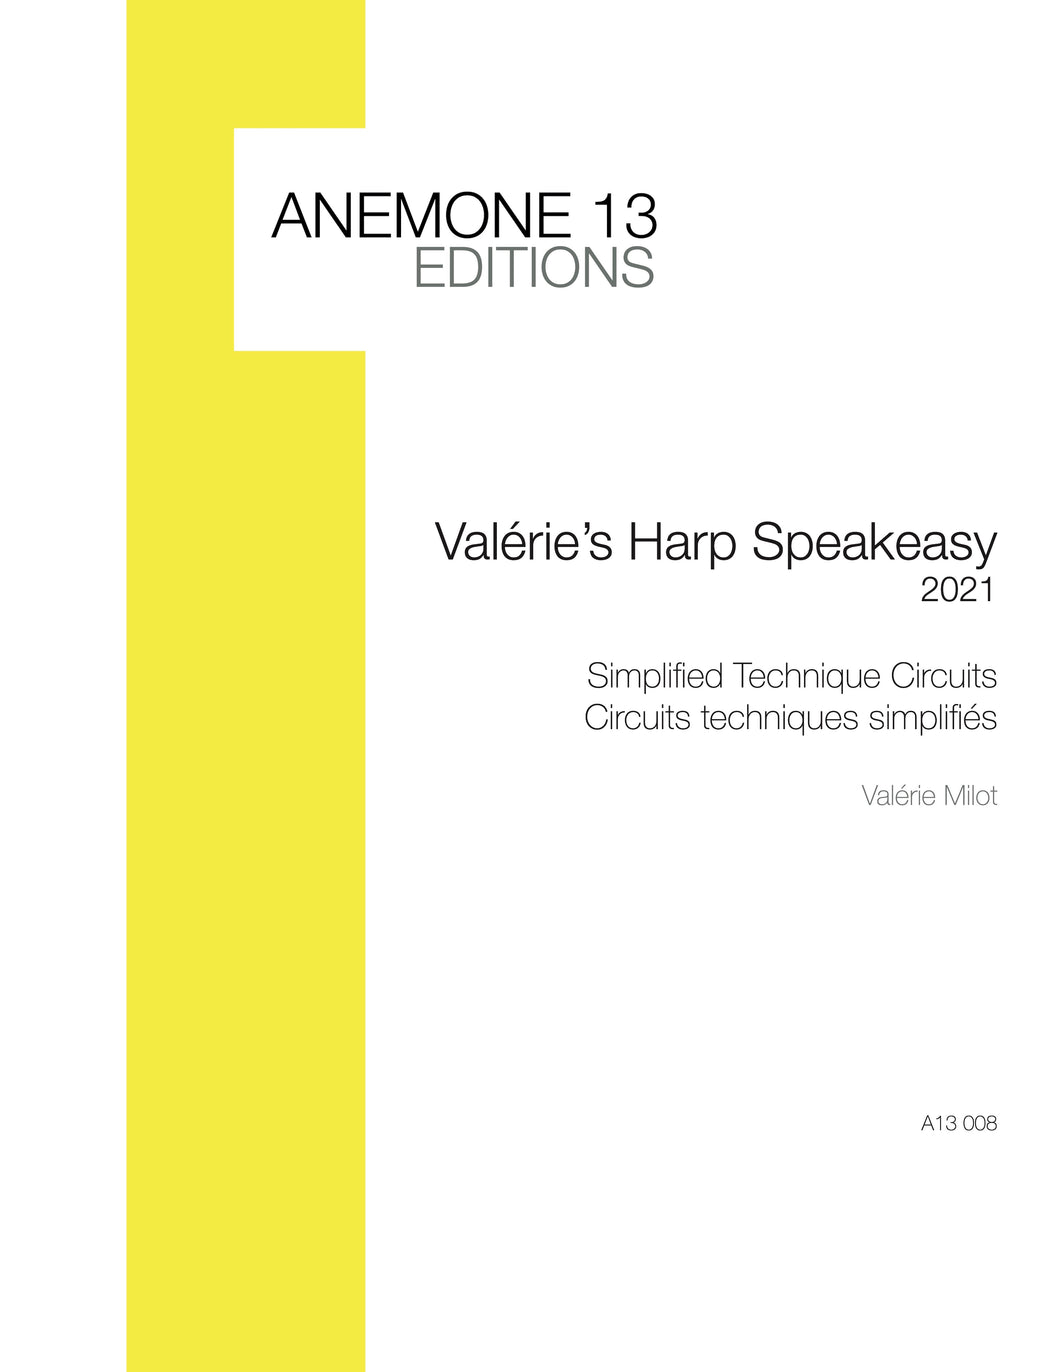 Circuits Techniques Simplifiés - Valérie's Harp Speakeasy 2021